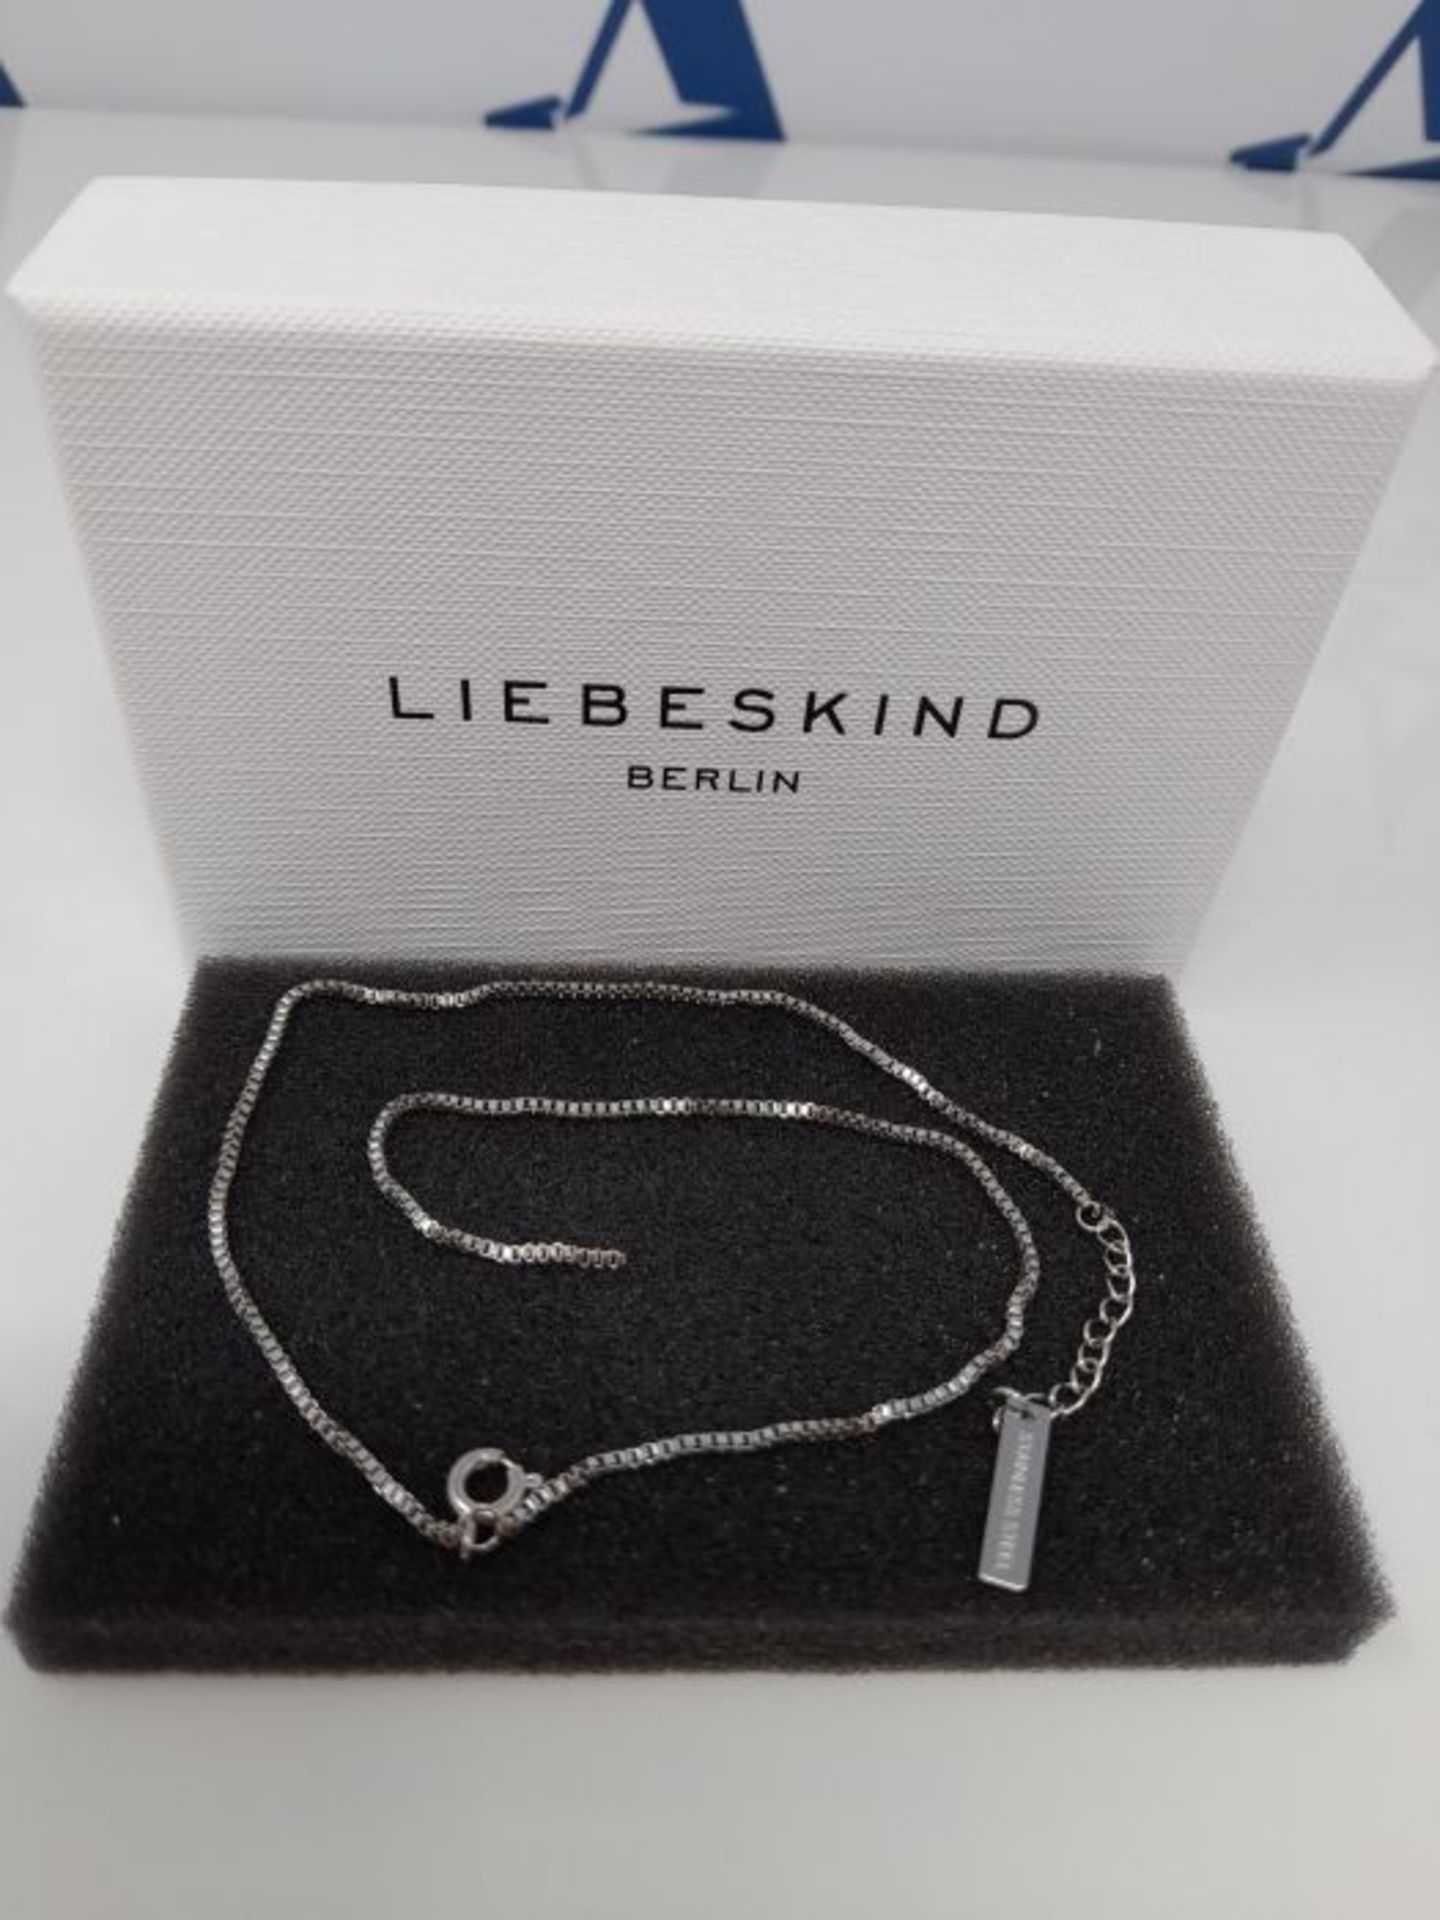 [CRACKED] Liebeskind Berlin Ladies Stainless Steel Not a gem bracelet - LJ-0452-B-20 - Image 2 of 3